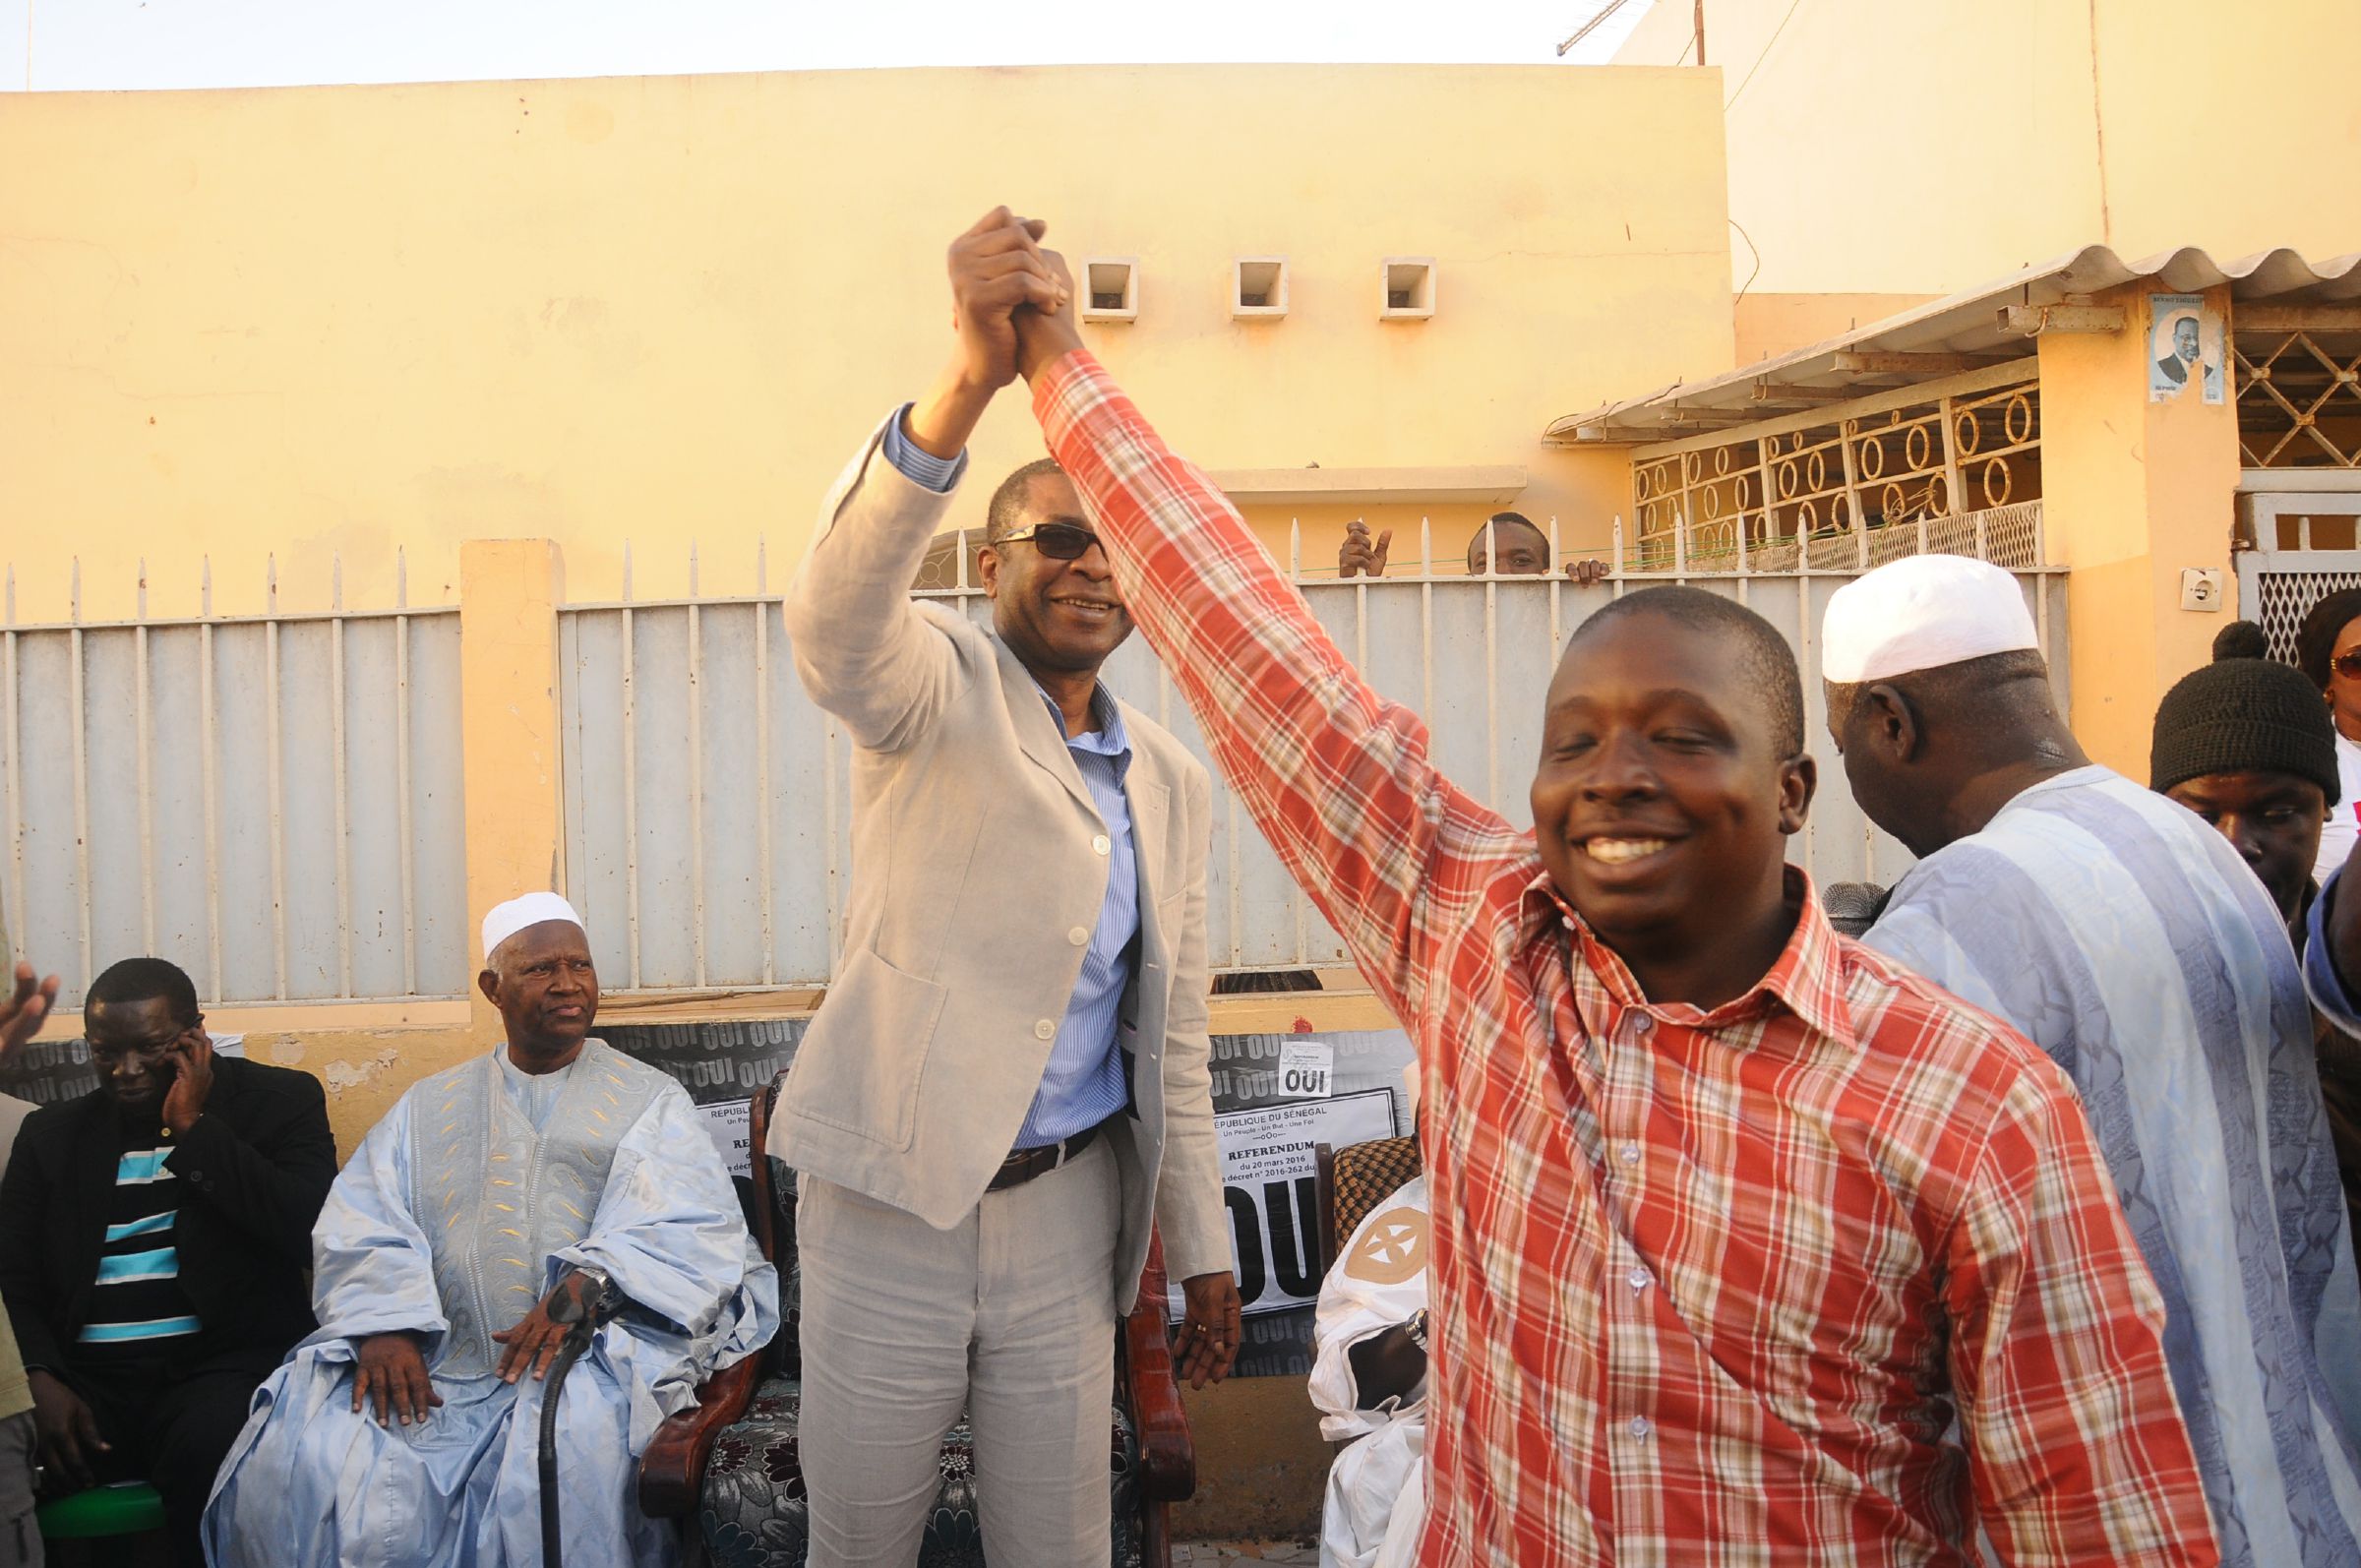 Référendum: Les jeunes de Fekké Ma Ci Boolé derrière Pédre Ndiaye disent "Oui" à Youssou Ndour